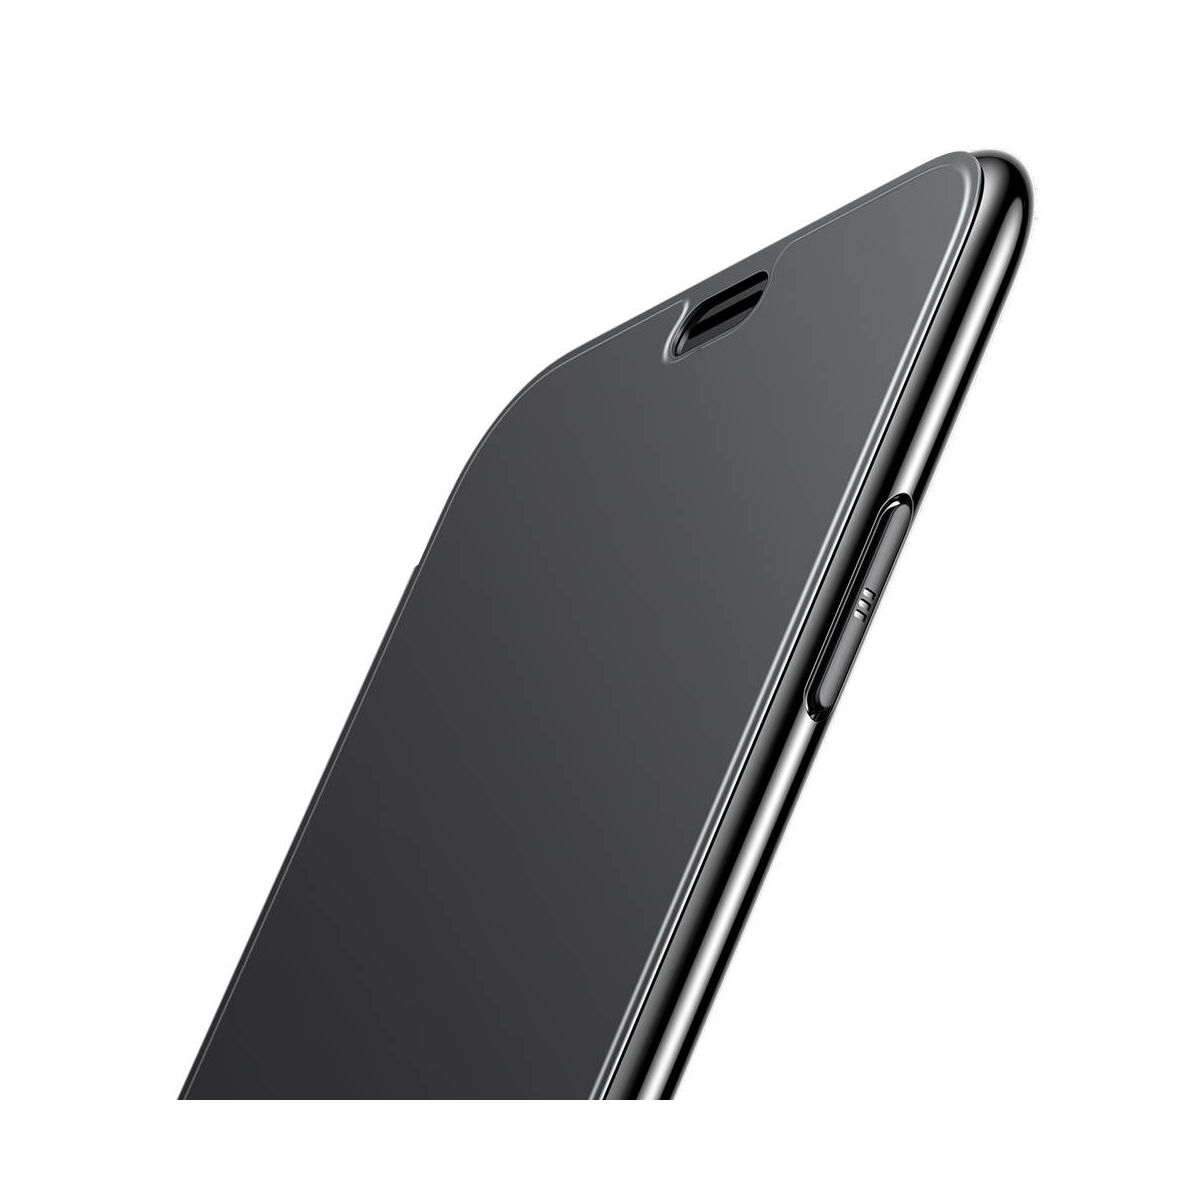 Kép 5/8 - Baseus iPhone XS Max tok, Touchable kihajtható, érintőfelületű flip tok, fekete (WIAPIPH65-TS01)